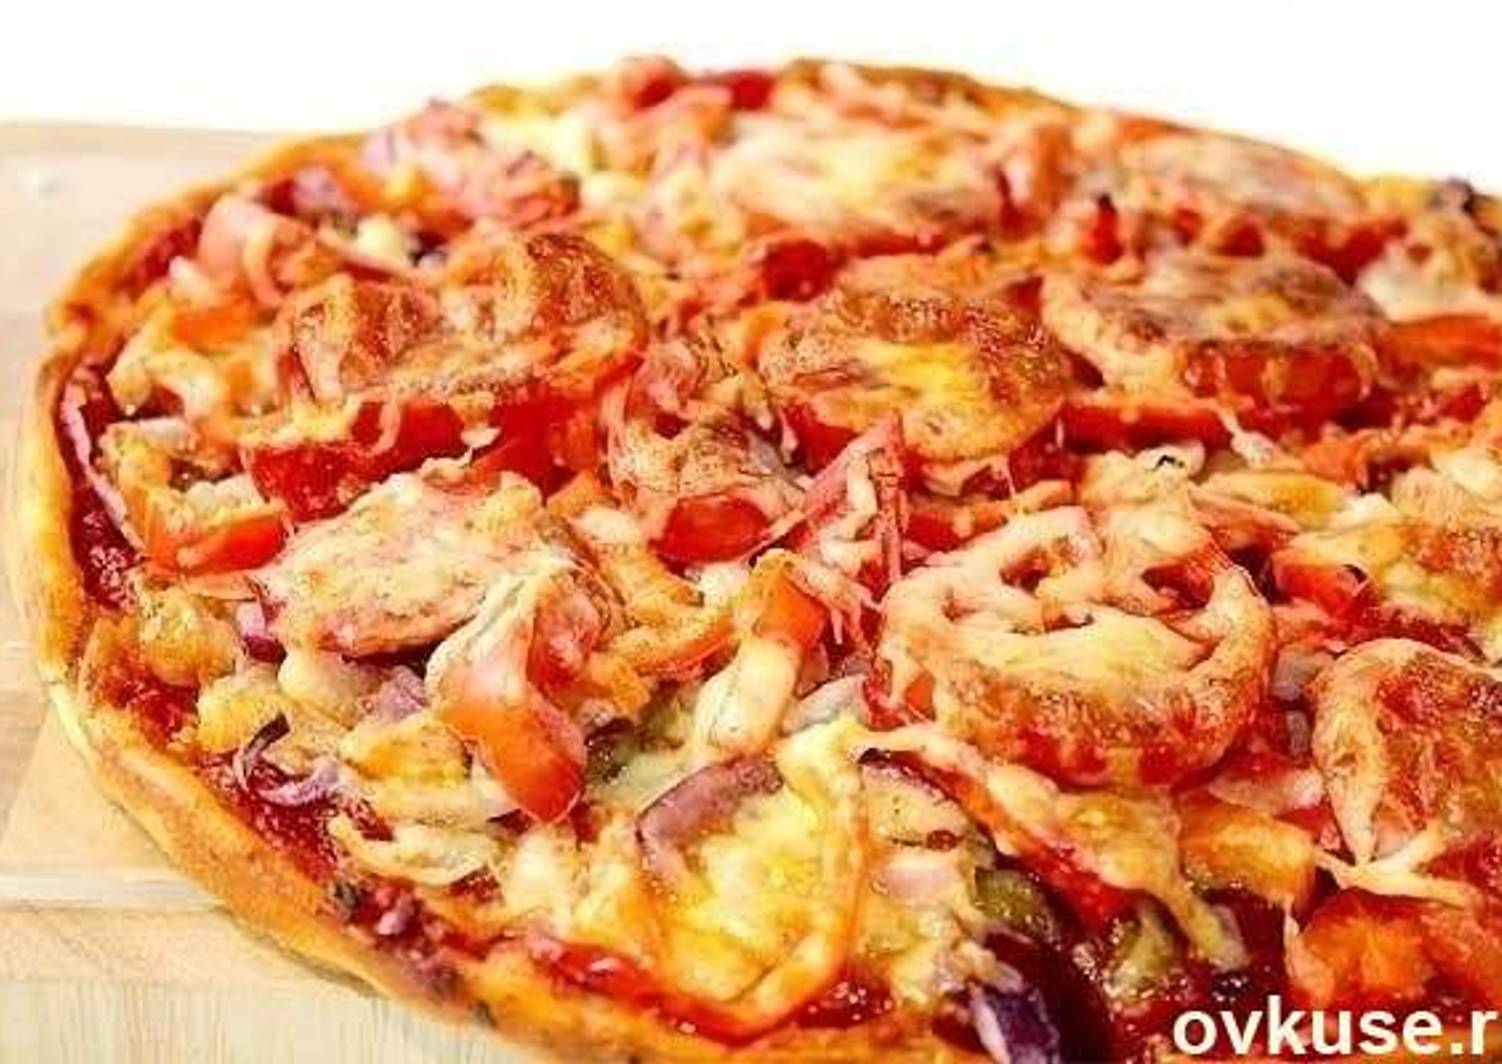 начинка на кефире для пиццы в духовке фото 110